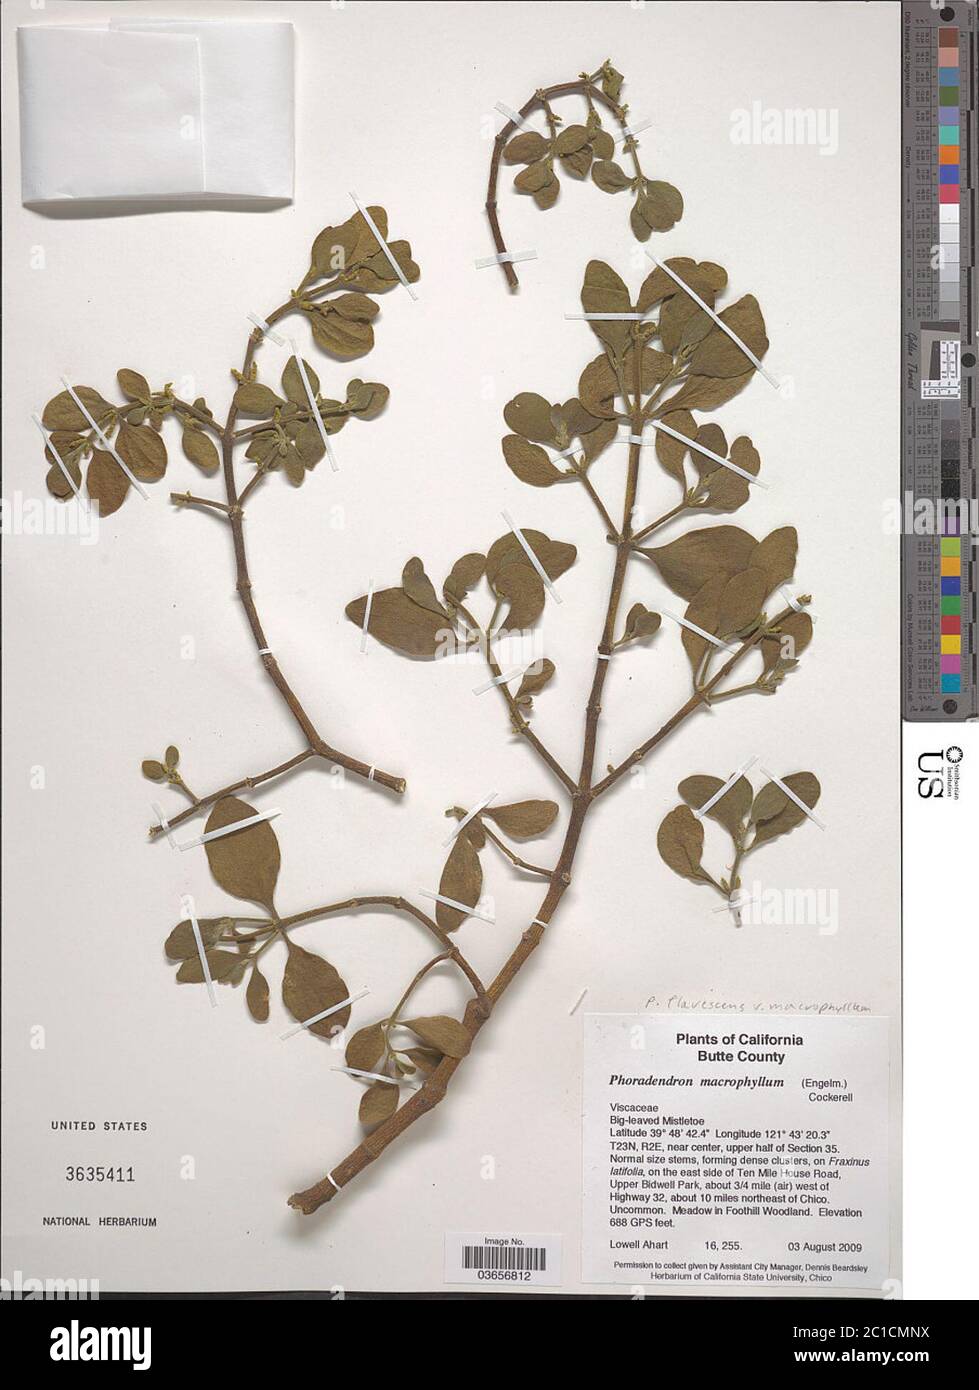 Phoradendron flavescens var villosum Engelm Phoradendron flavescens var villosum Engelm. Stock Photo